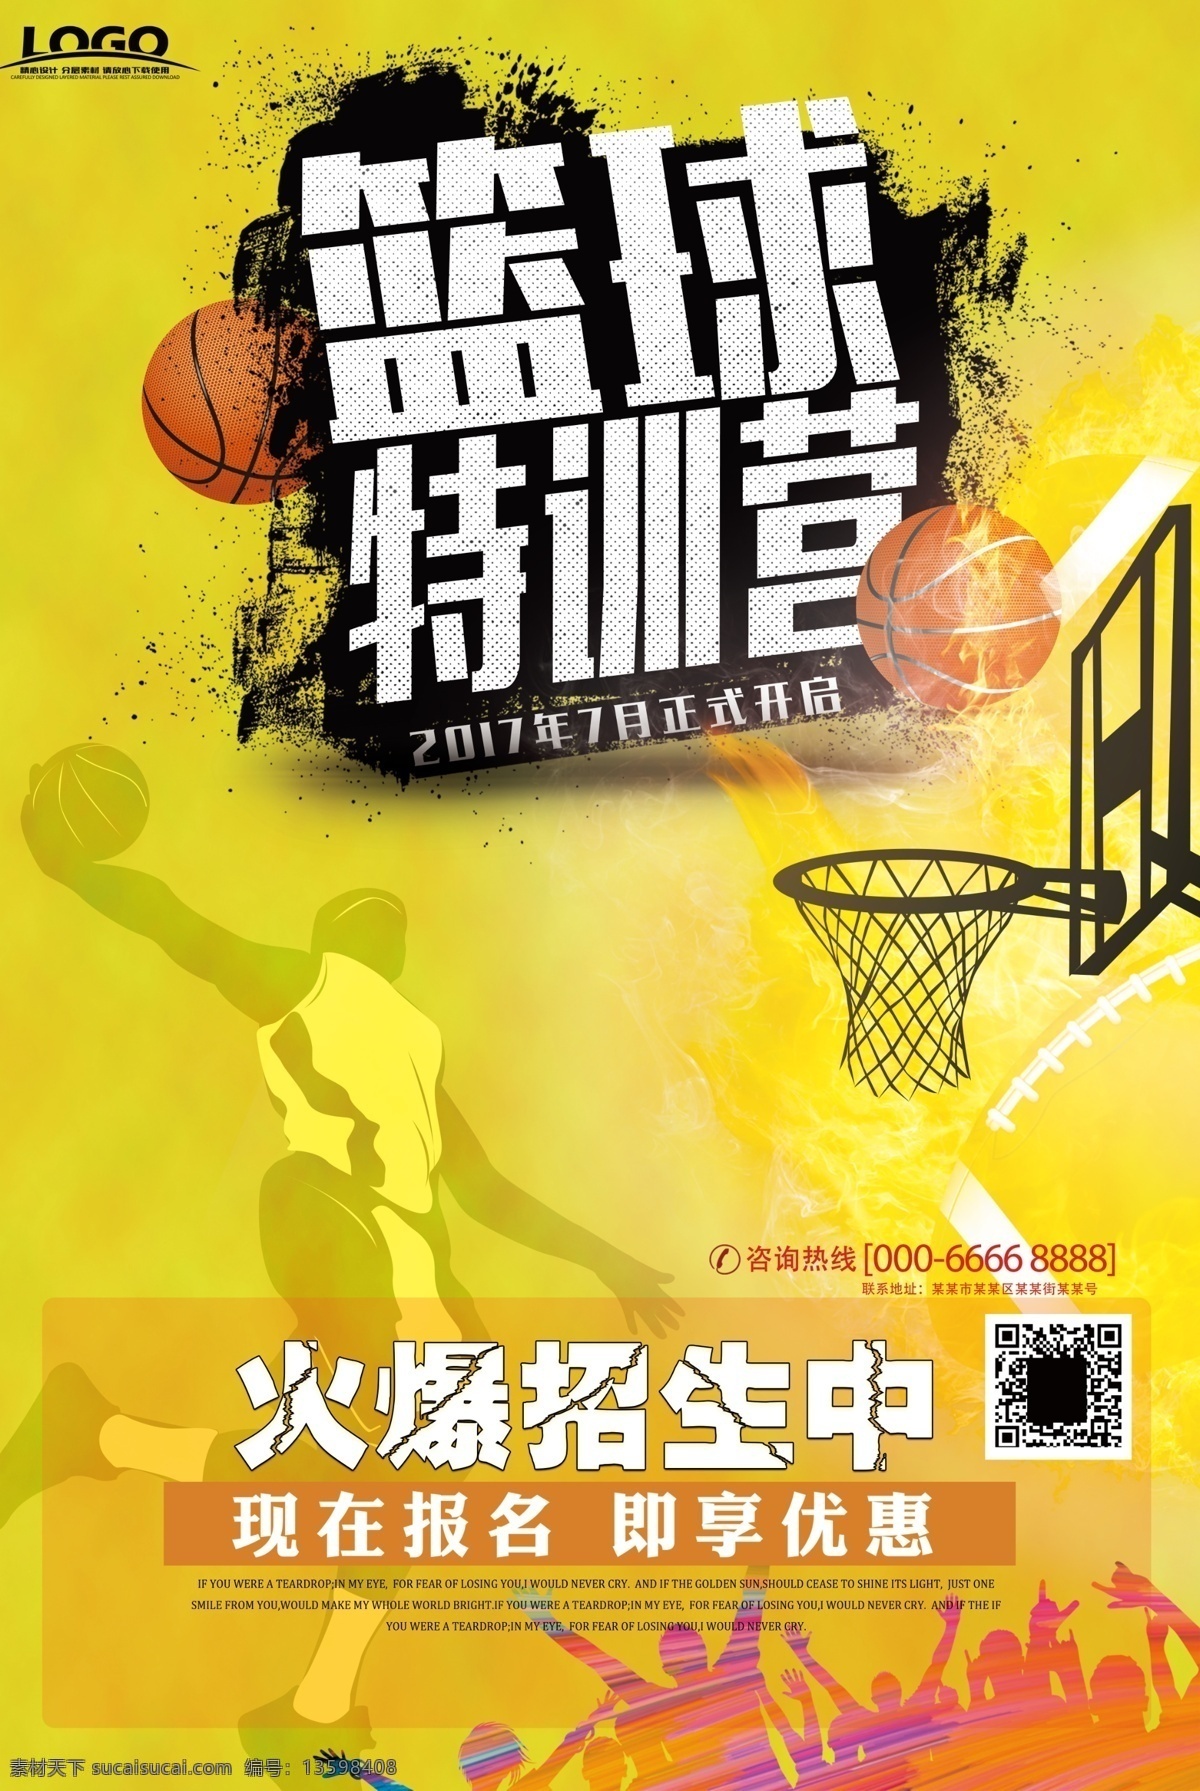 篮球海报 篮球特训营 篮球 篮球比赛 城市篮球赛 运动 球类海报 疯狂篮球 篮球比赛海报